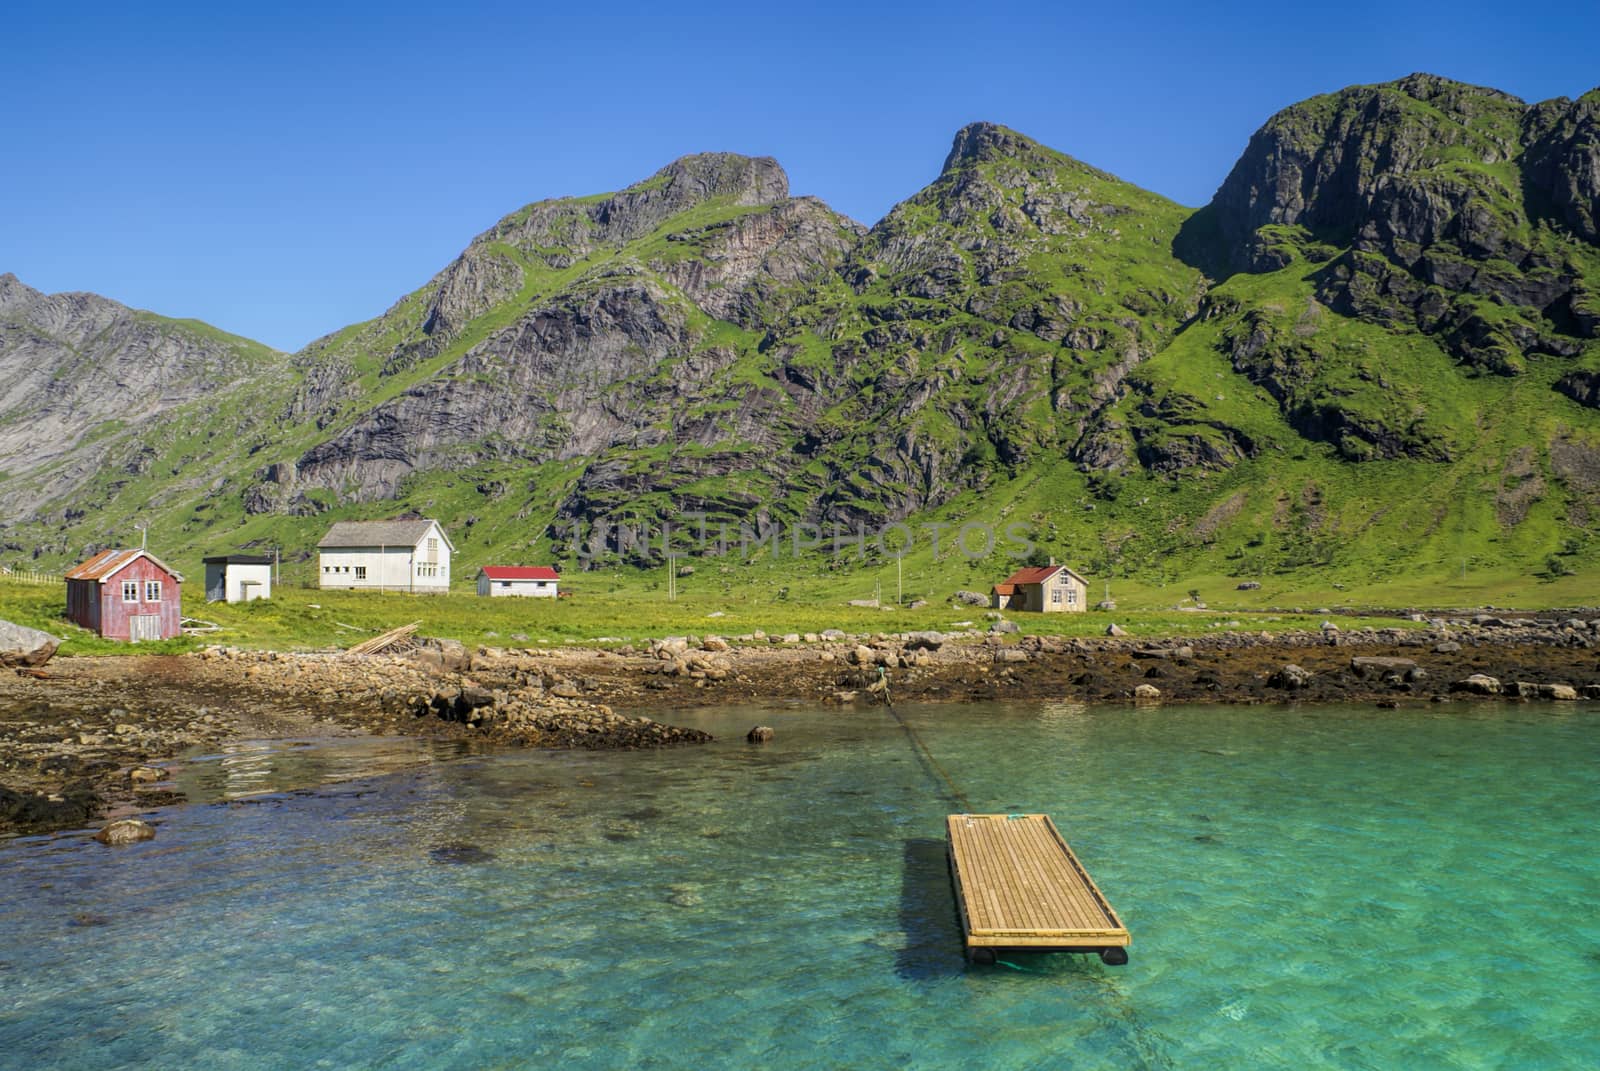 Picturesque coastline of Lofoten islands in Norway